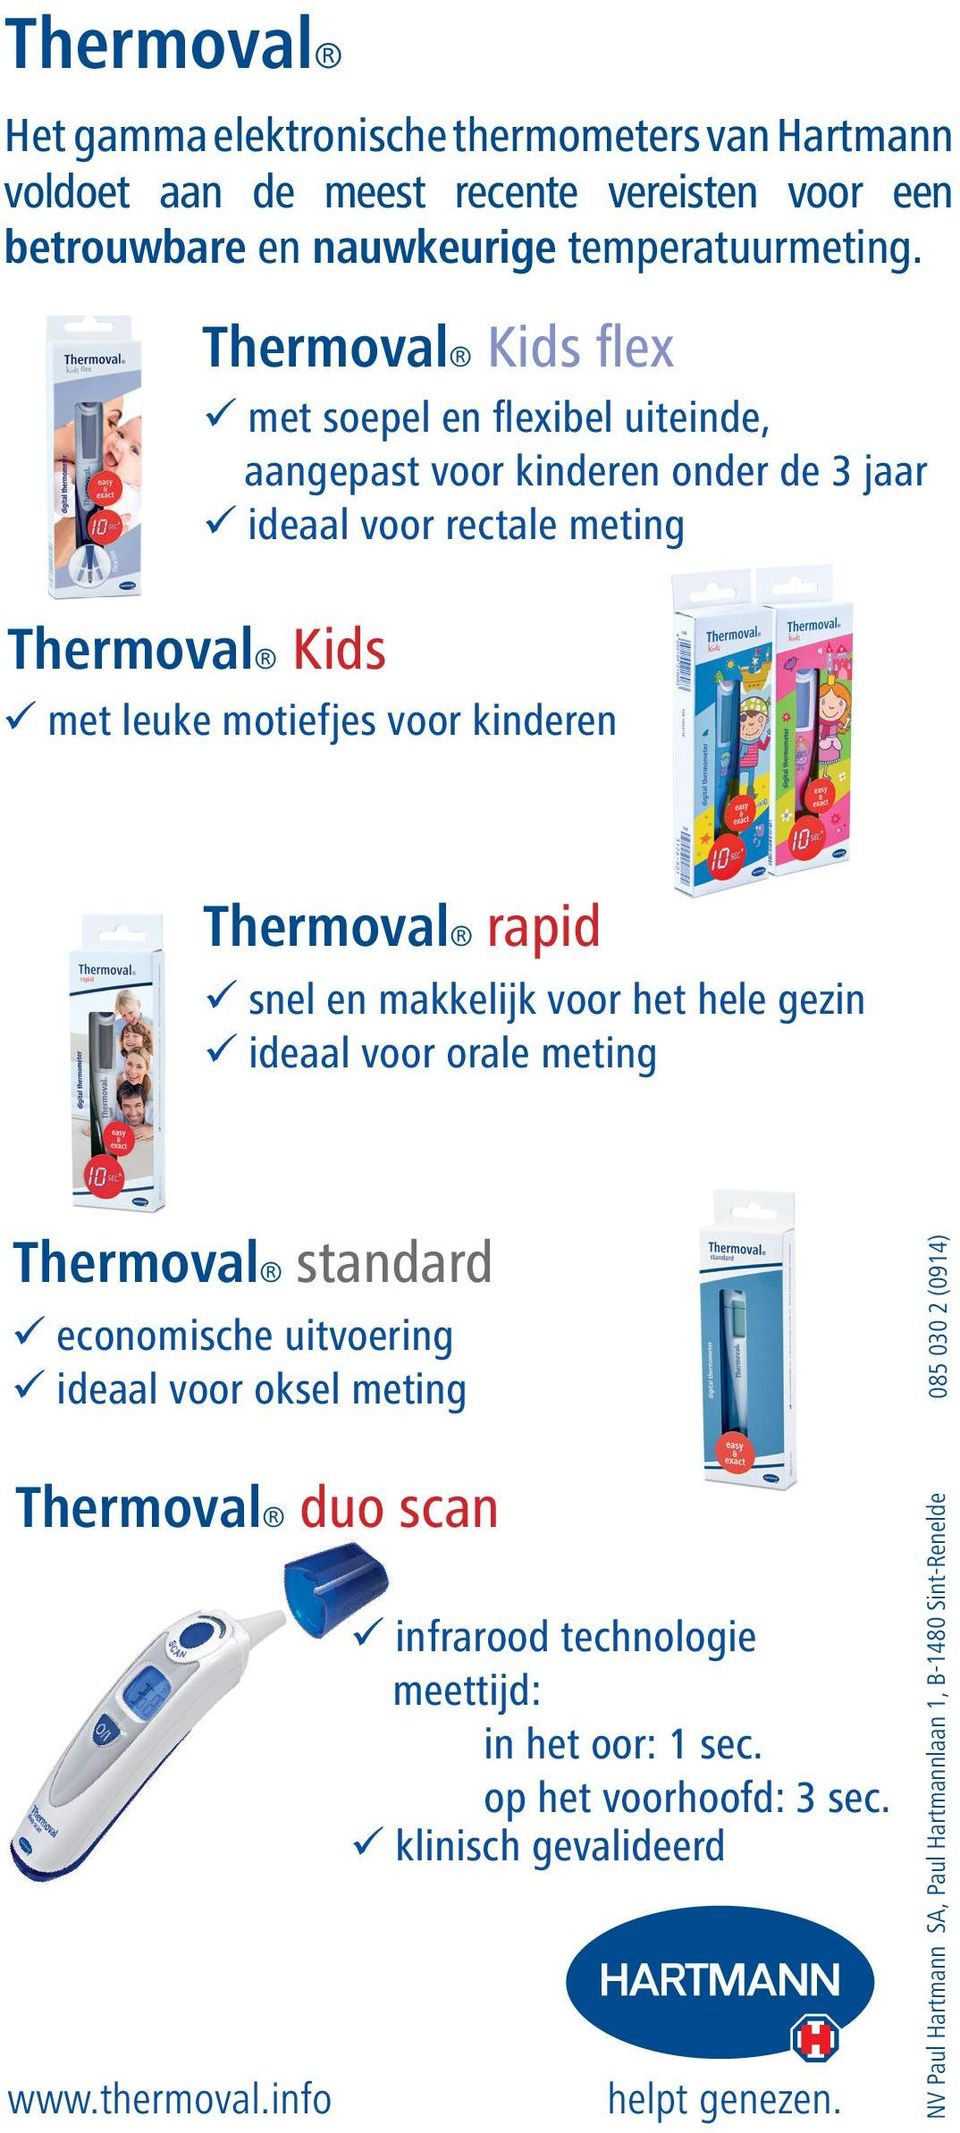 Thermoval rapid snel en makkelijk voor het hele gezin ideaal voor orale meting Thermoval standard economische uitvoering ideaal voor oksel meting Thermoval duo scan www.